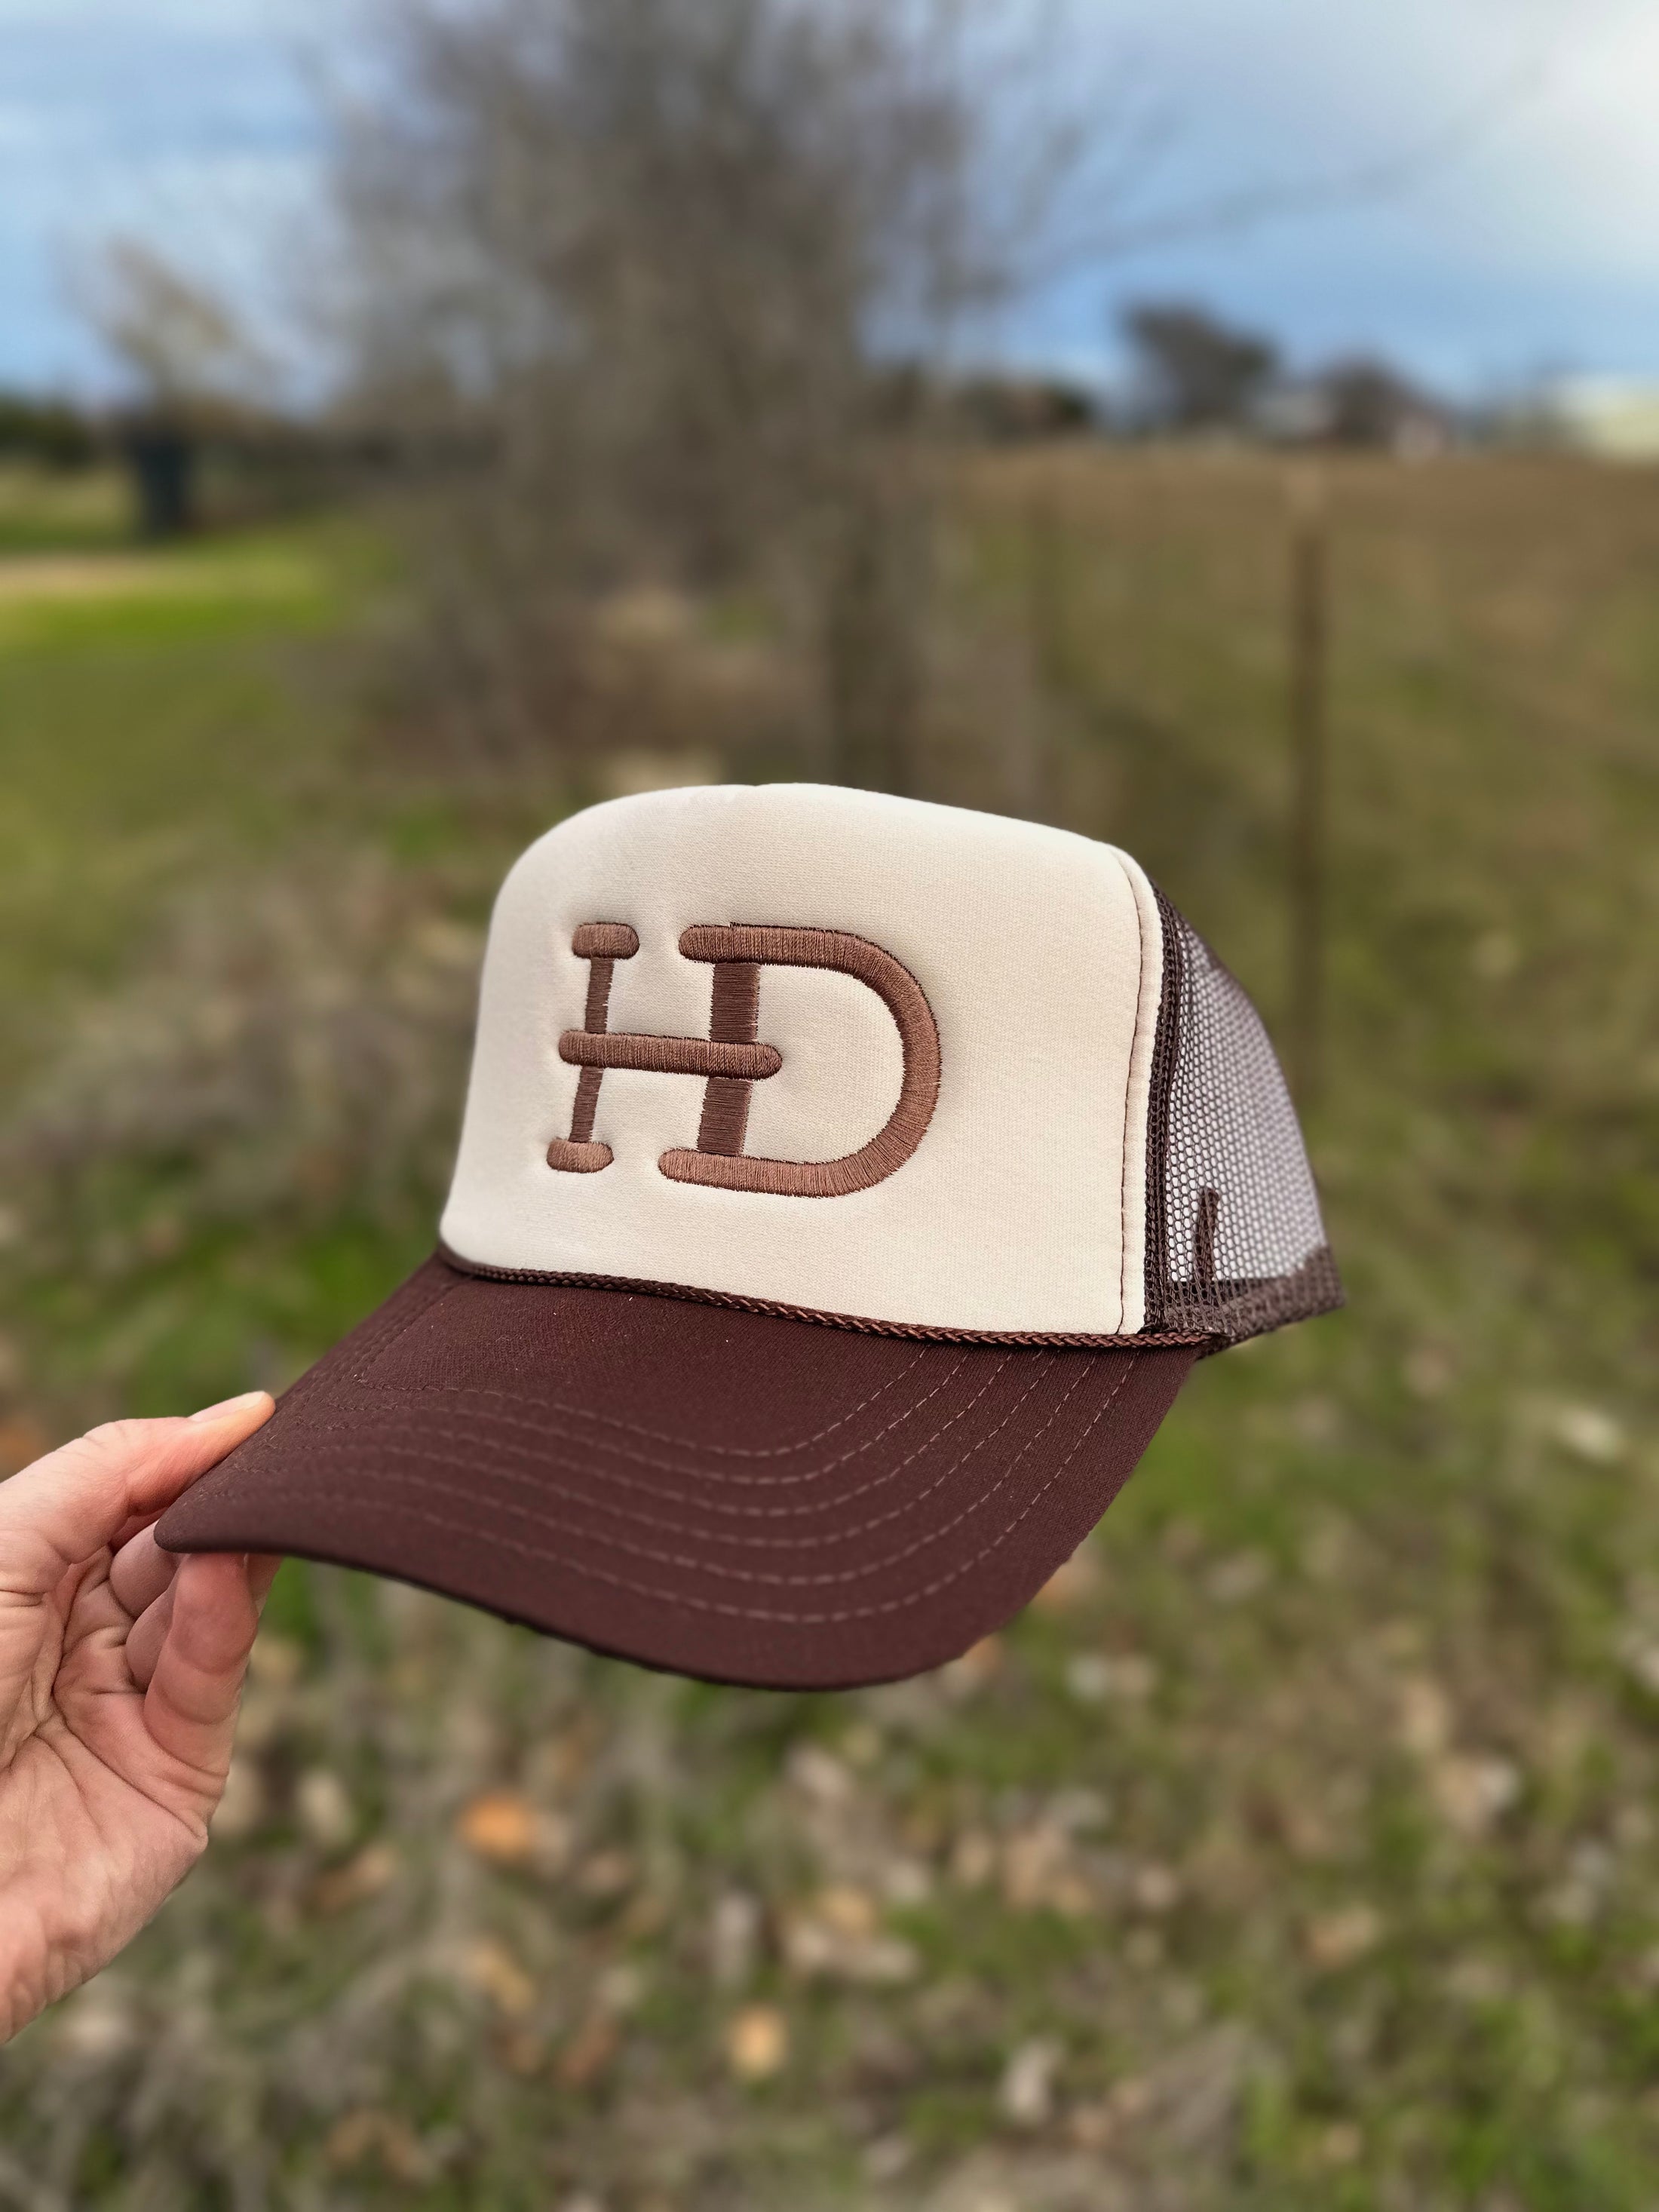 HD Brand Foam Trucker Hat - Brown